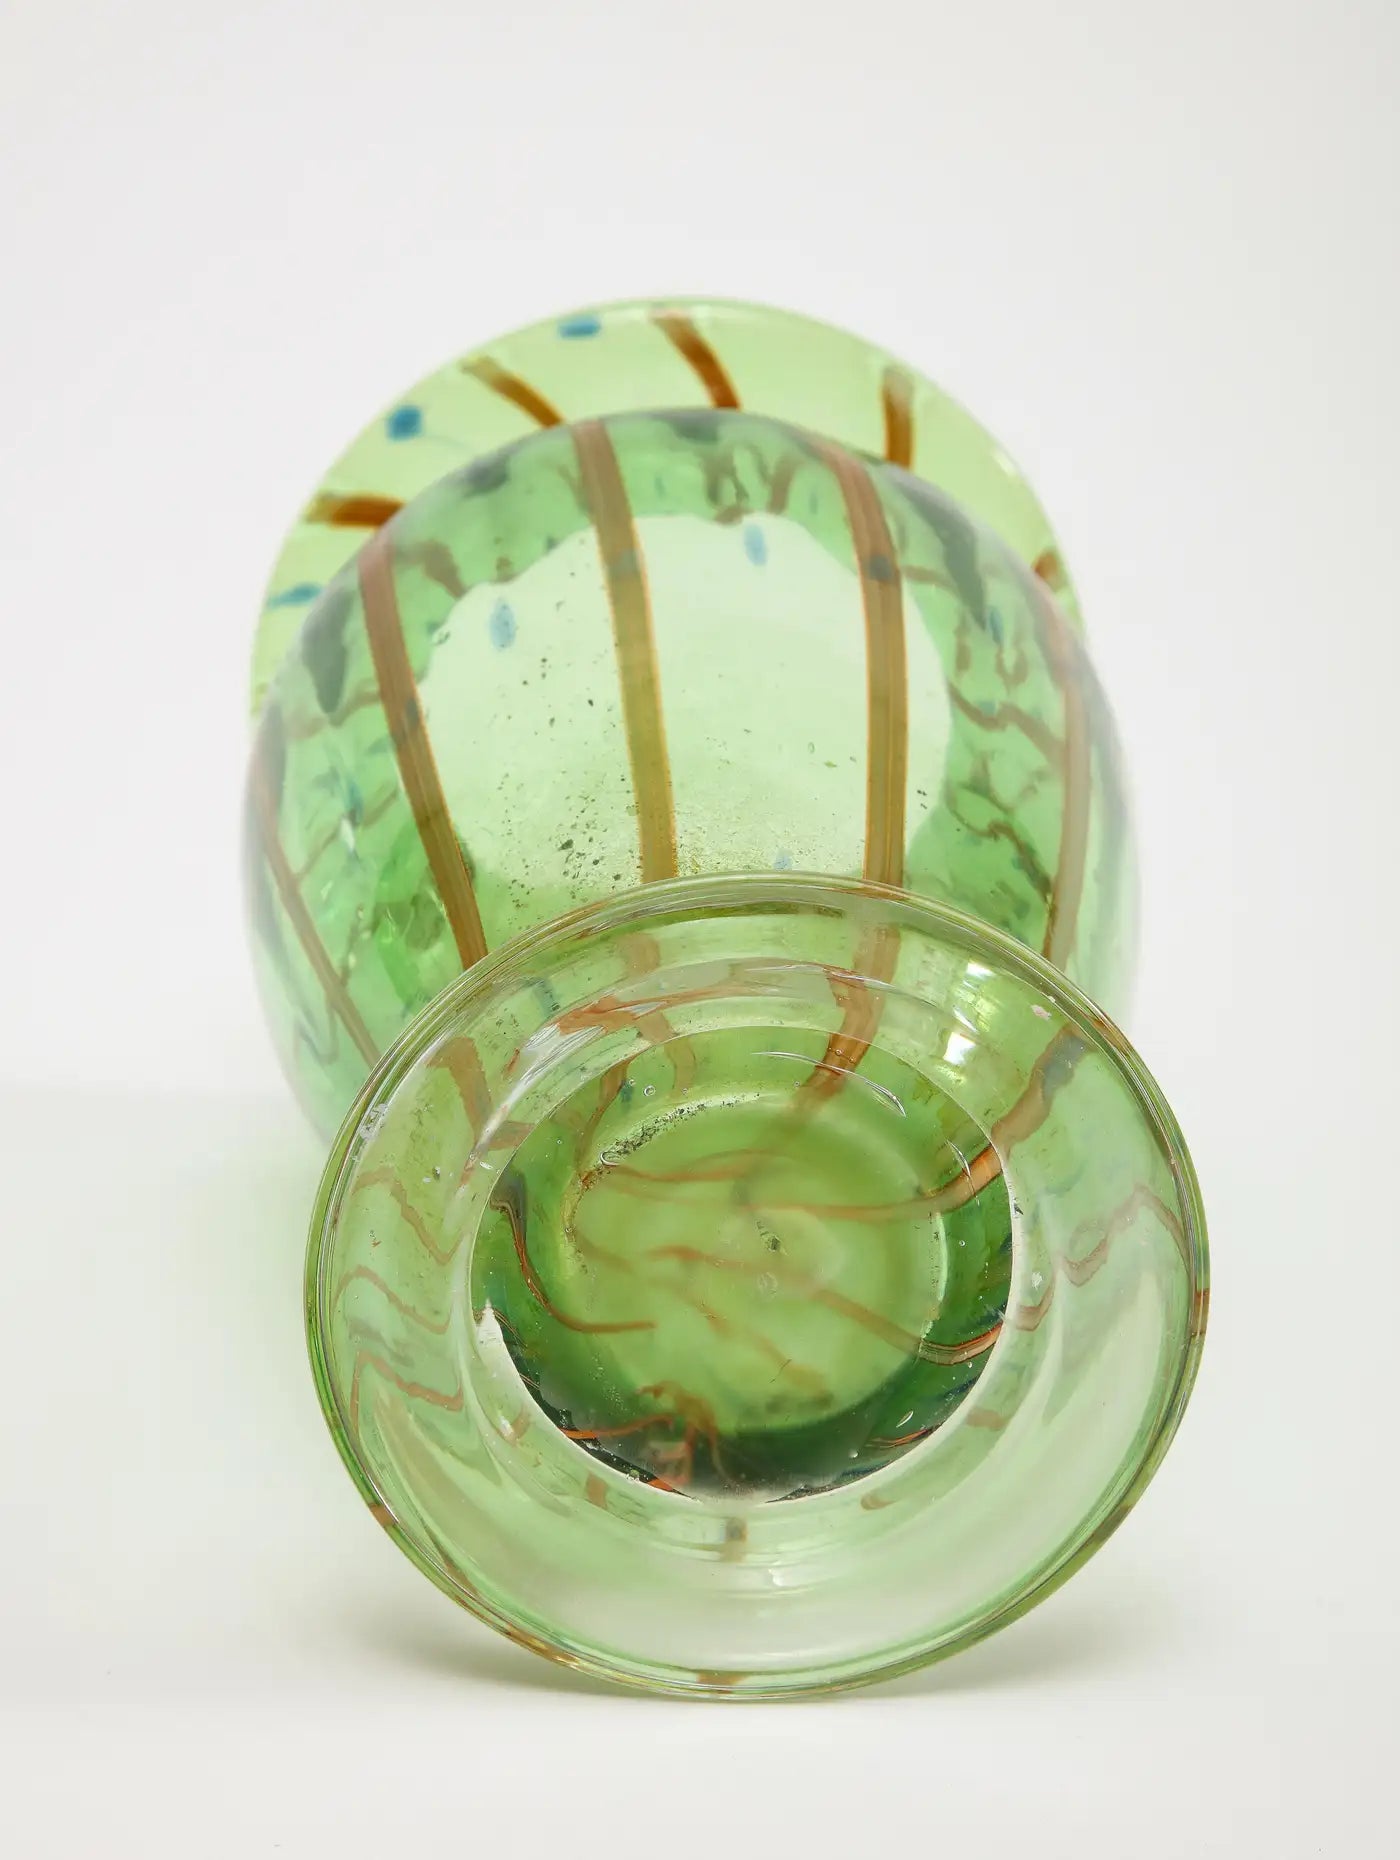 Midcentury Italian Green Murano Blown Glass Vase